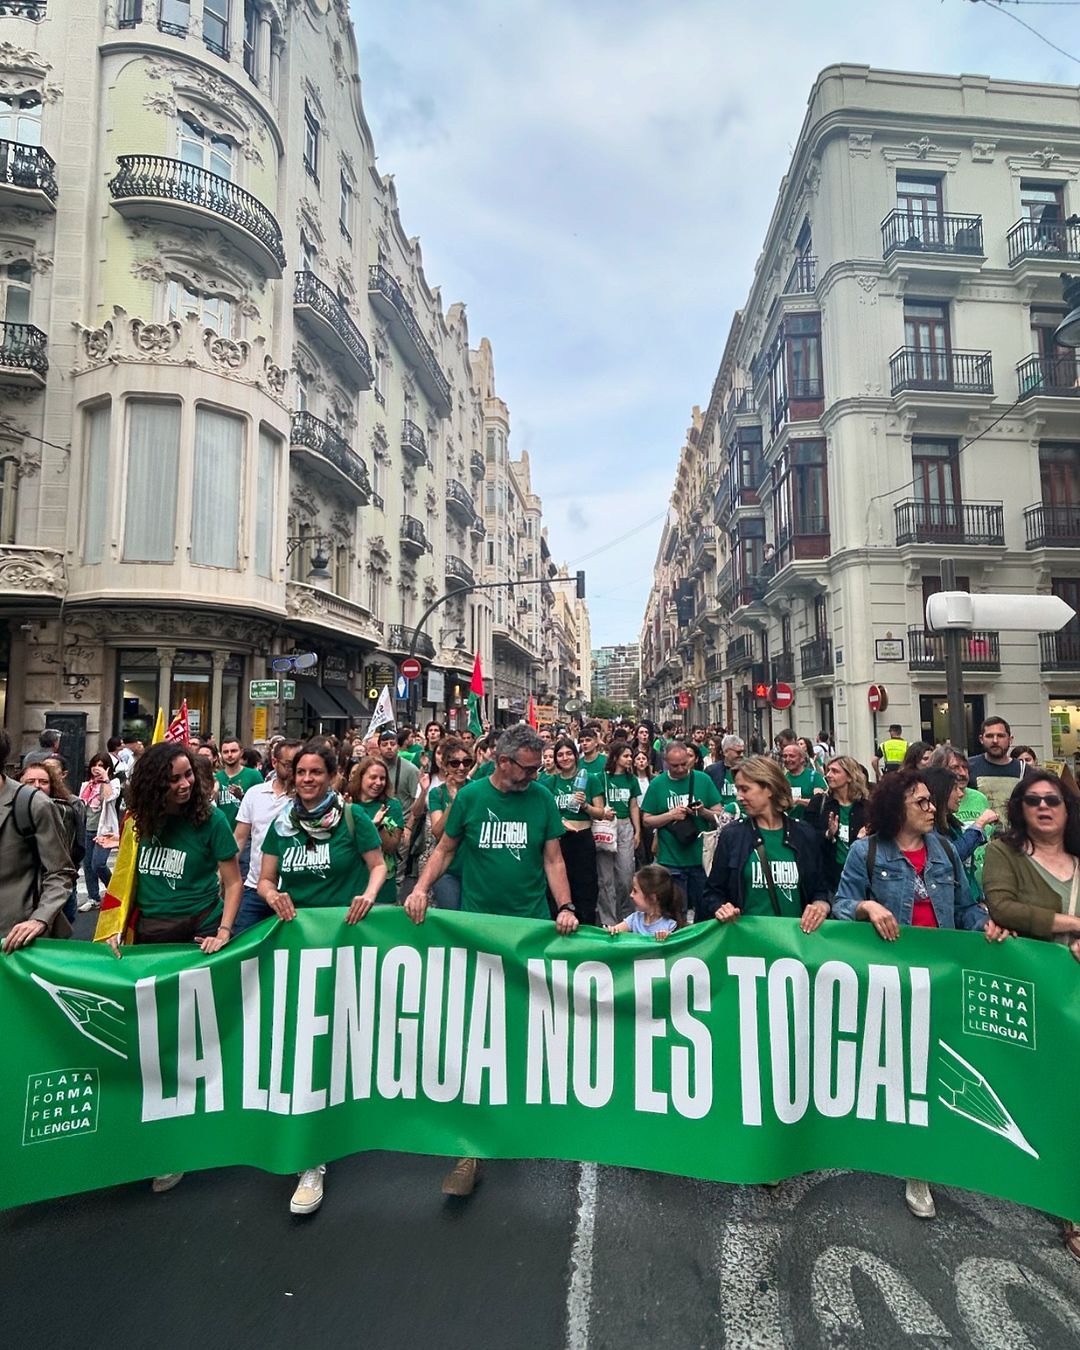 🟢 Milers de persones a tot arreu del País Valencià criden que #LaLlenguaNoEsToca!

🫶🏼 Gràcies per baixar als carrers i participar en cada mobilització. Ara més que mai, FES-TE’N SOCI de @plataformaperlallengua i ajuda’ns a defensar i promoure el valencià. 

👉 Recorda que dijous que ve la campanya continua, posa’t la samarreta i fes que el nostre crit s’estenga per cada racó del territori.